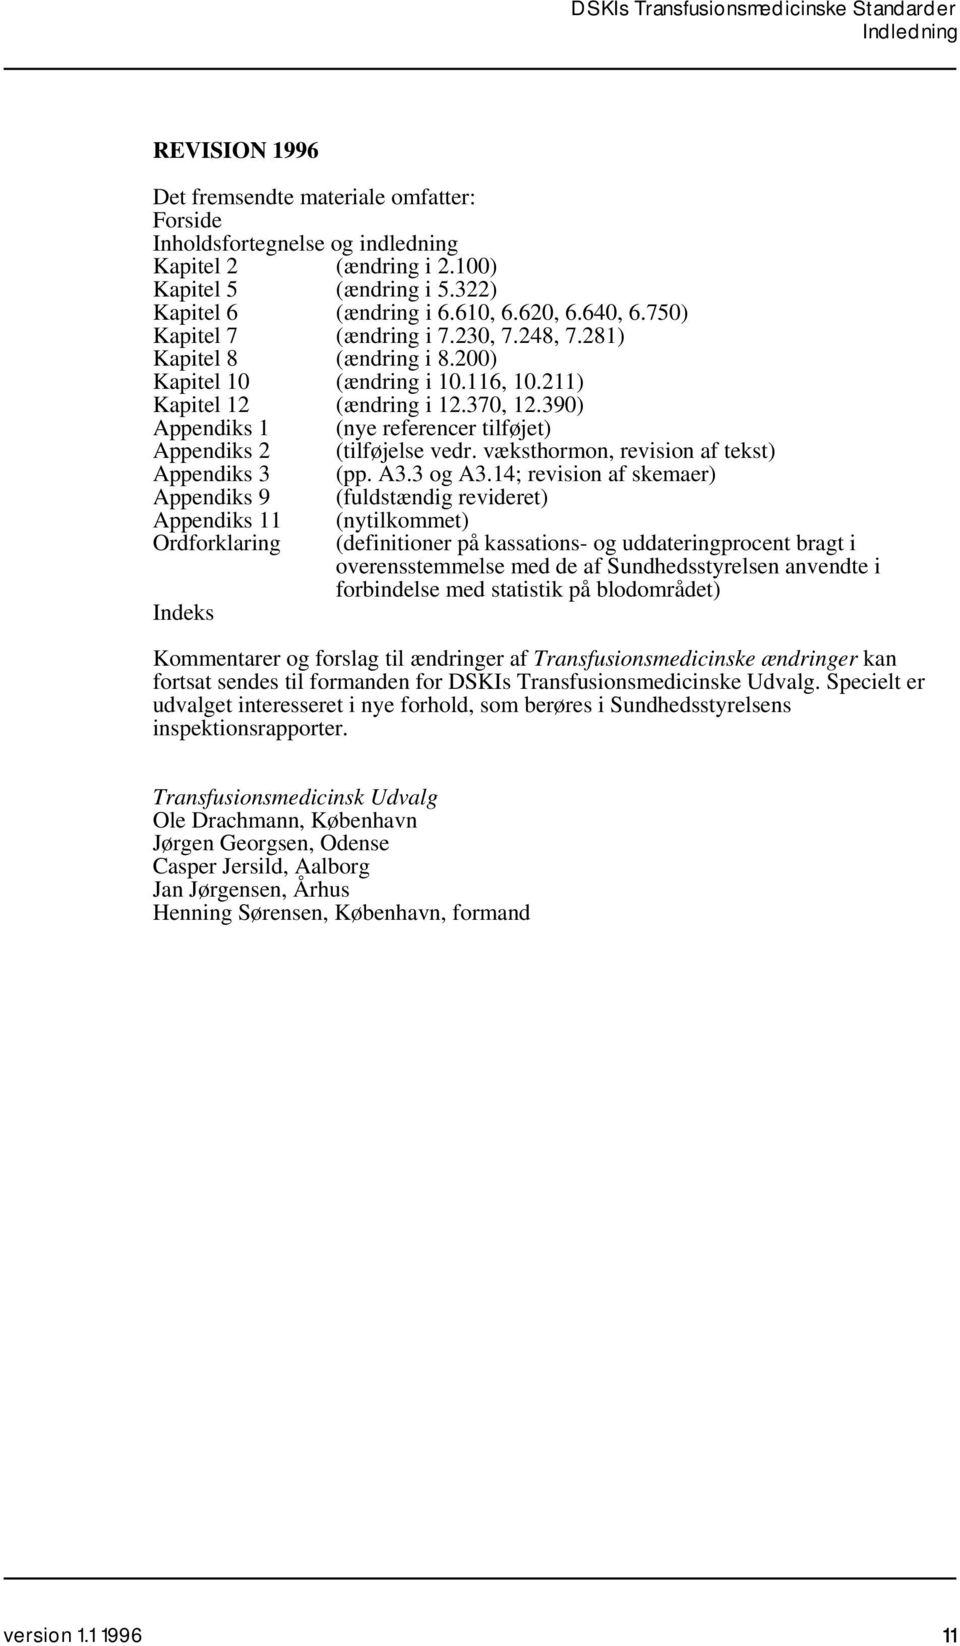 390) Appendiks 1 (nye referencer tilføjet) Appendiks 2 (tilføjelse vedr. væksthormon, revision af tekst) Appendiks 3 (pp. A3.3 og A3.